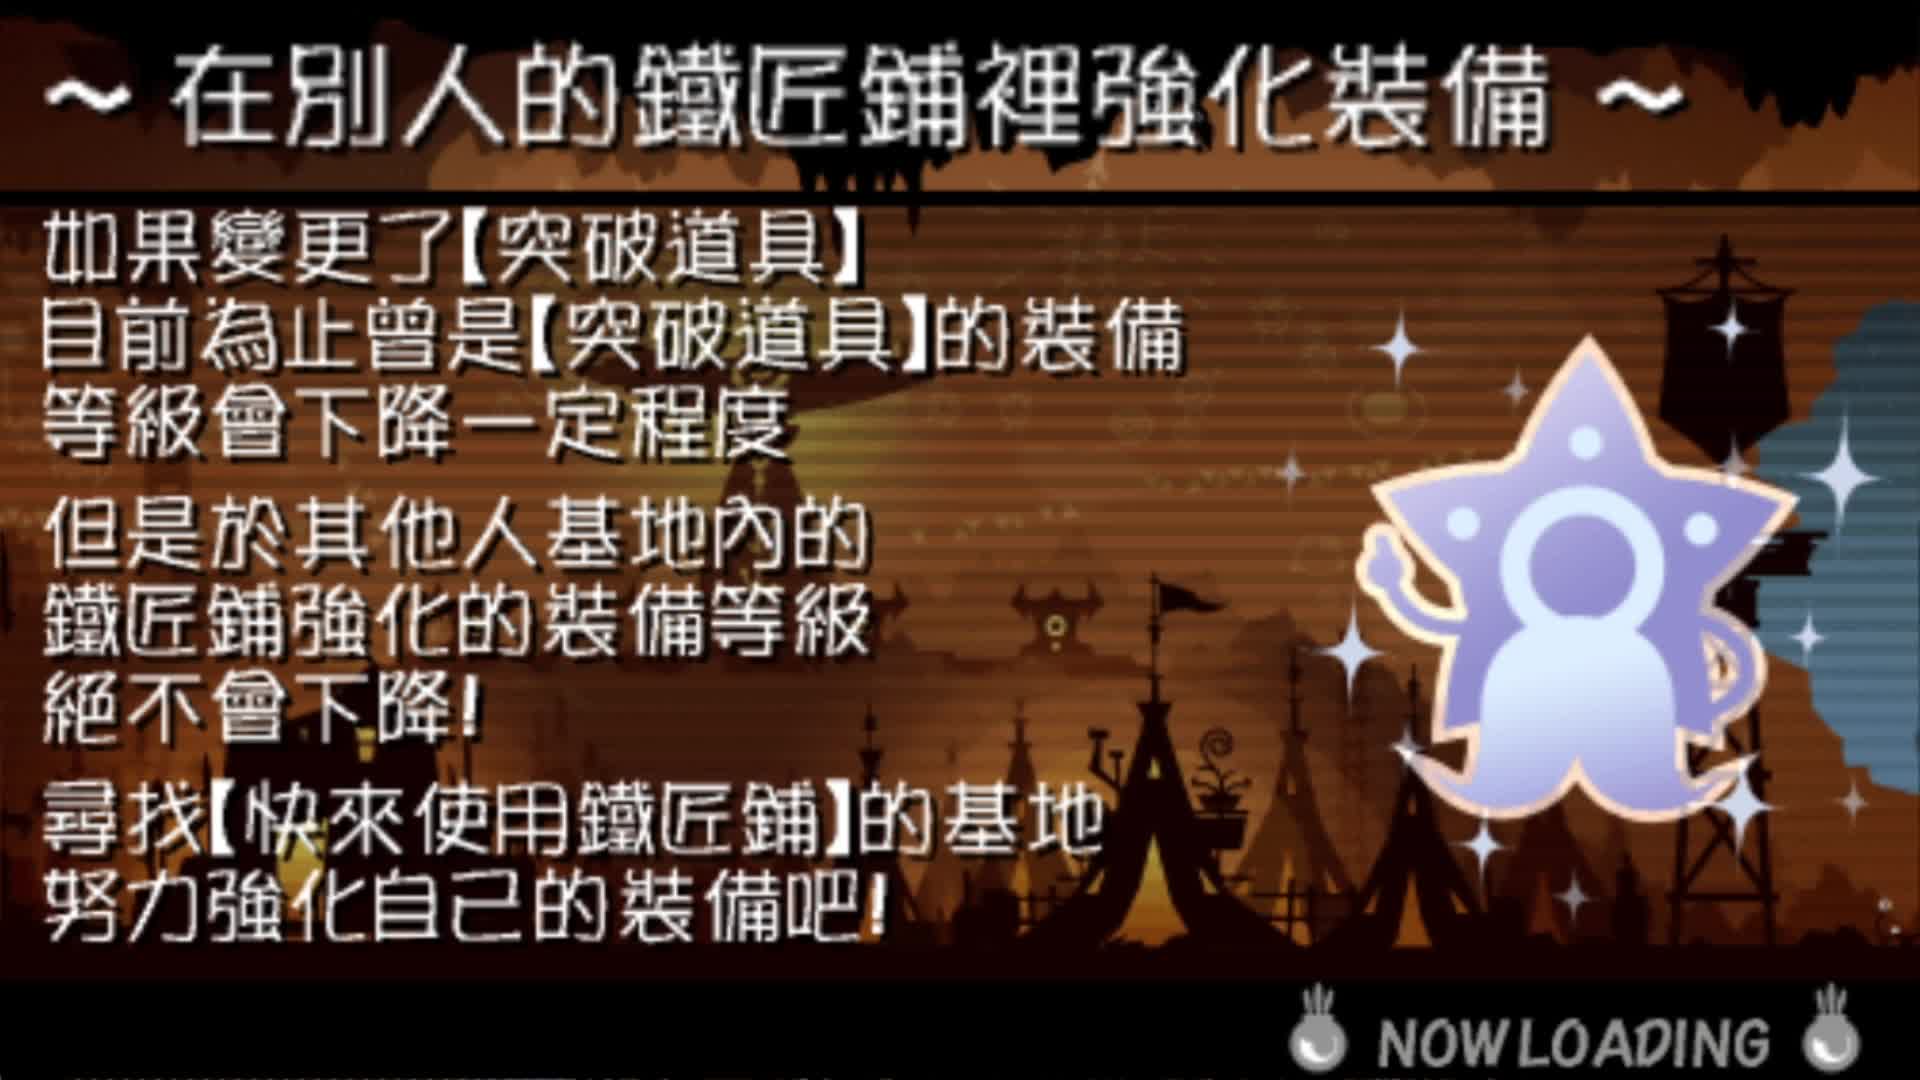 第10期 PSP战鼓啪嗒砰3汉化版 音乐节奏游戏 娱乐解说